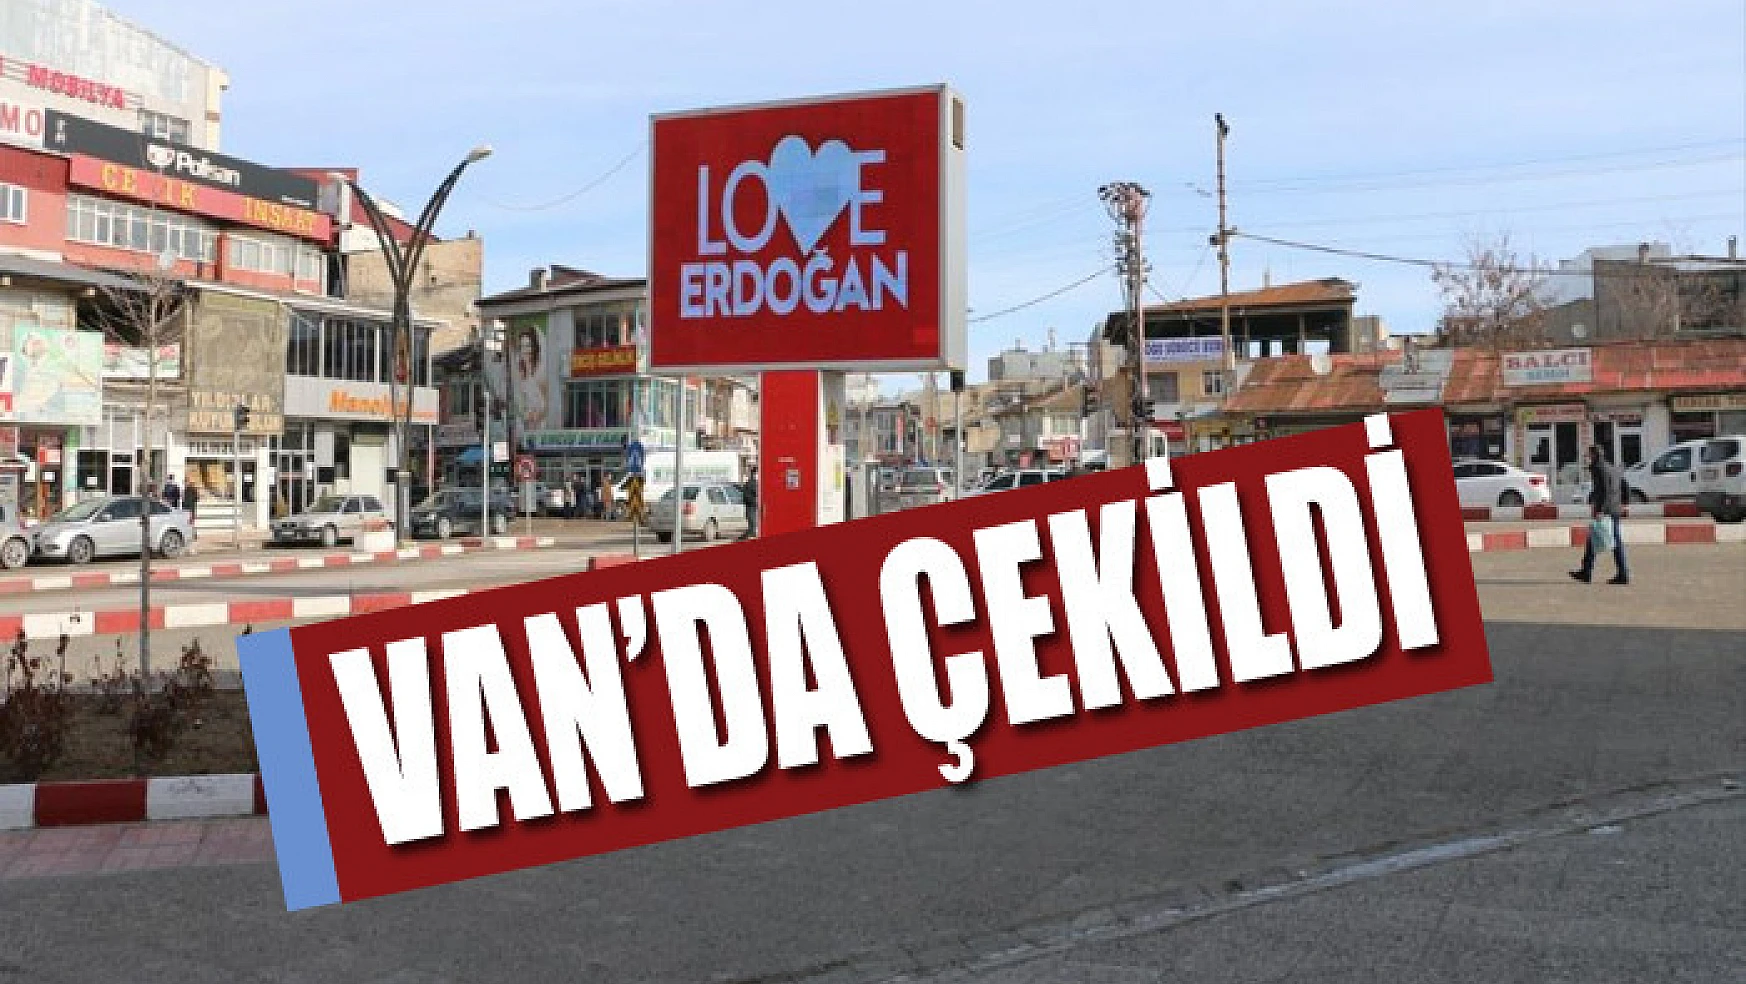 Erciş'te 'Love Erdoğan' görseli